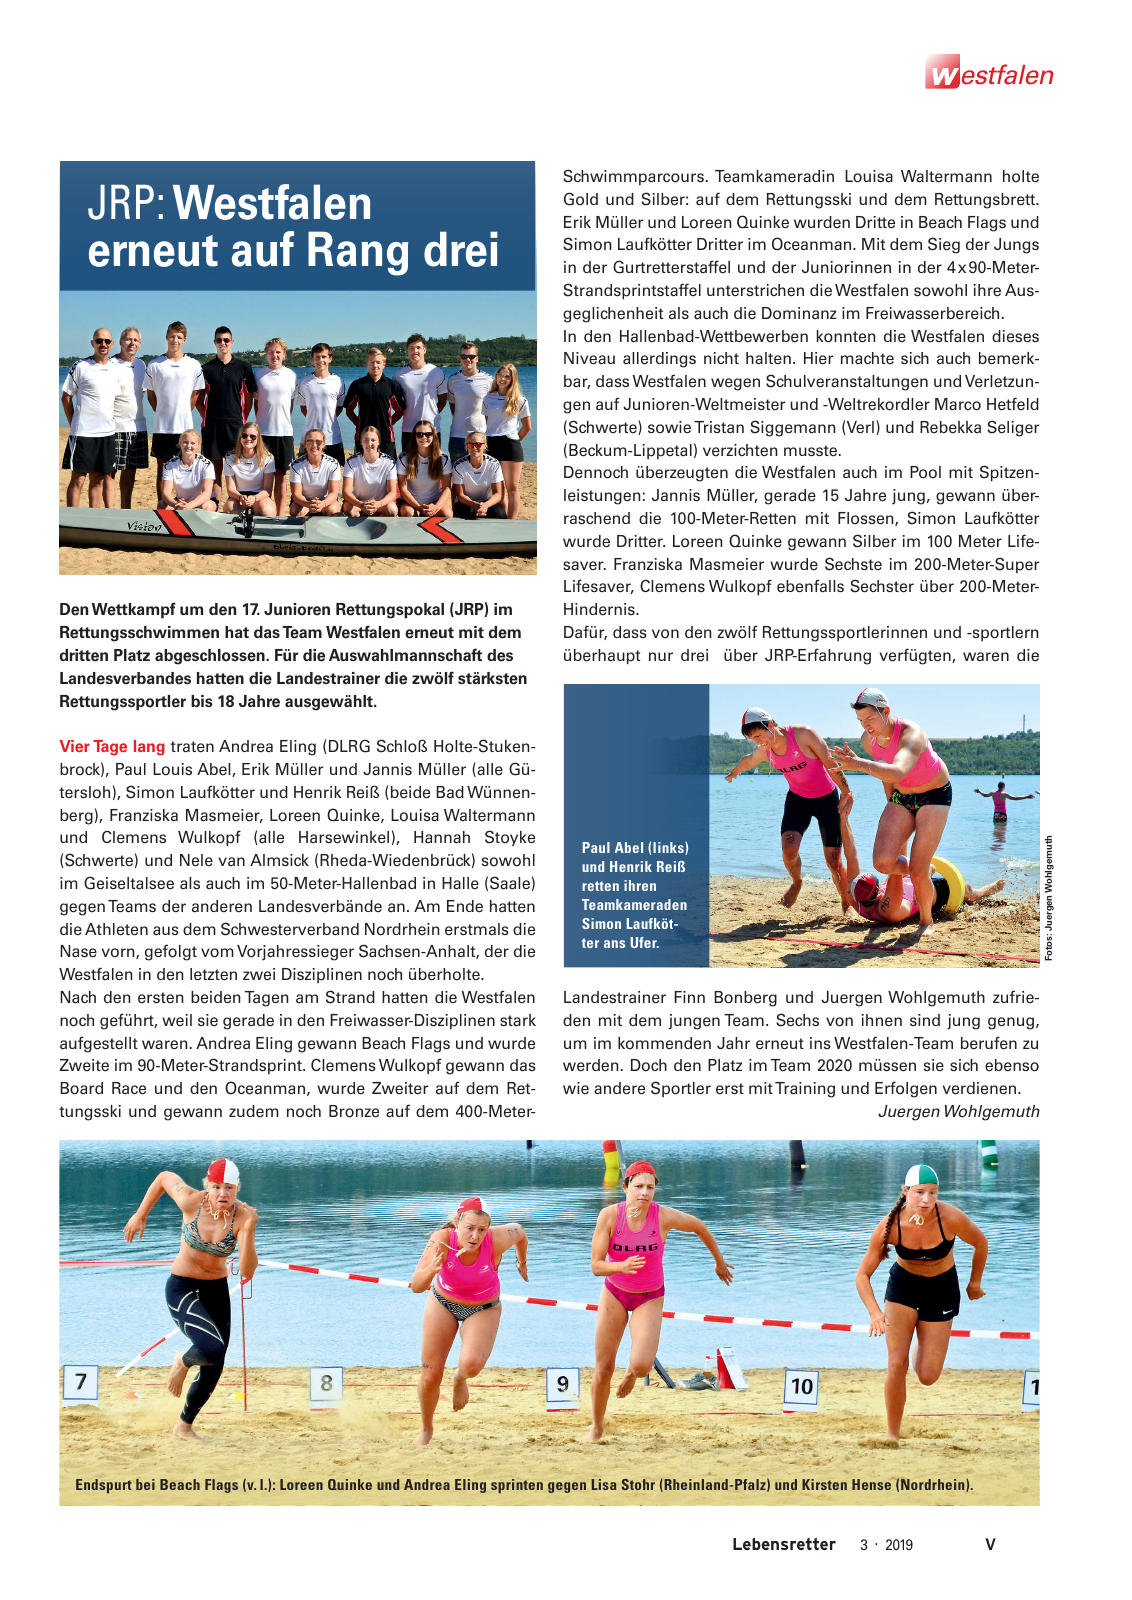 Vorschau Lebensretter 3/2019 - Westfalen Regionalausgabe Seite 7